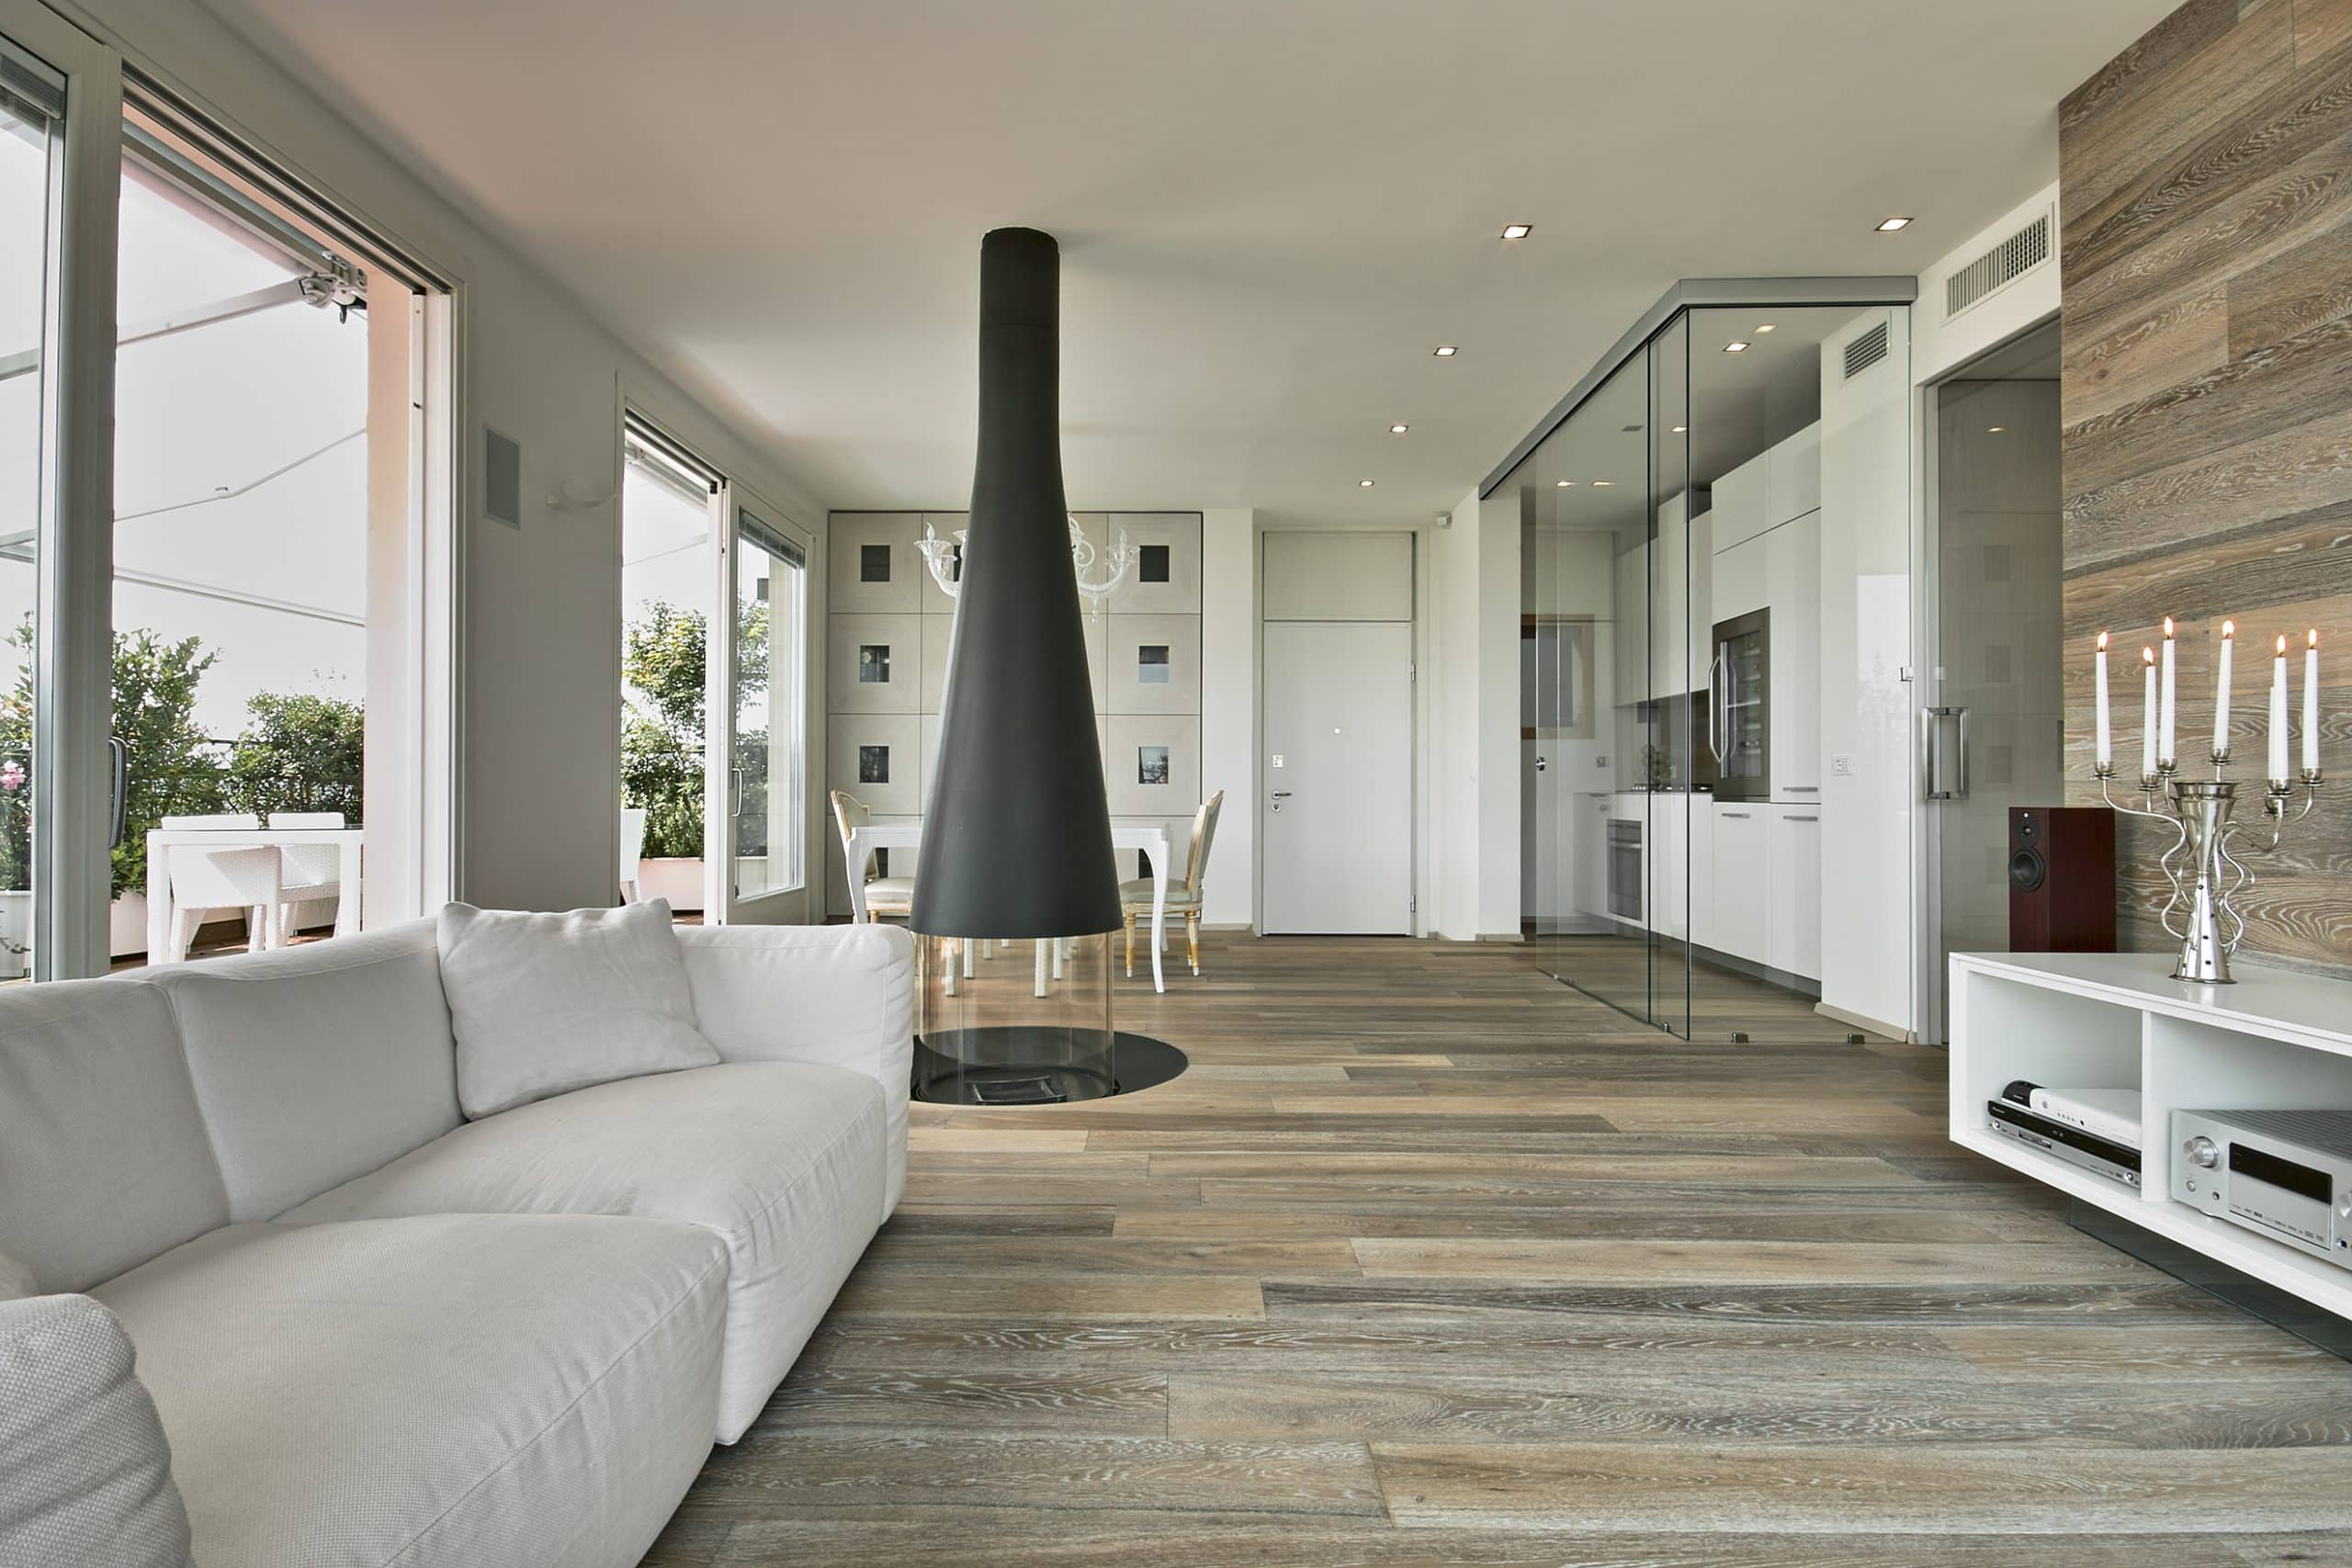 Offener Wohnraum mit freistehendem Kamin und elegantem Parkettboden.